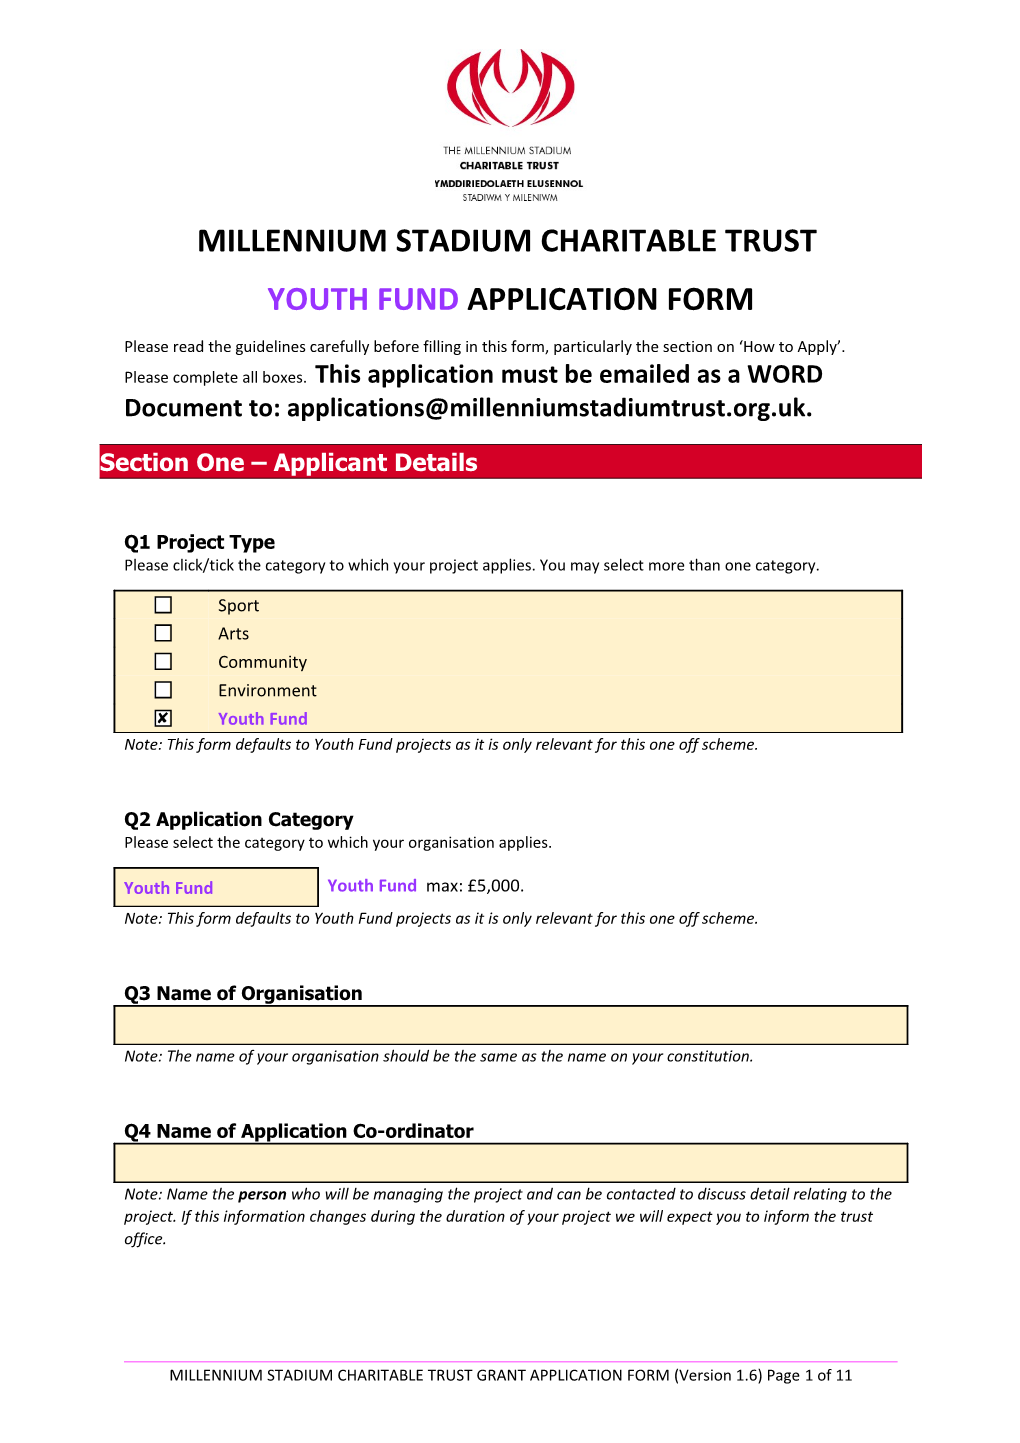 Millennium Stadium Charitable Trust